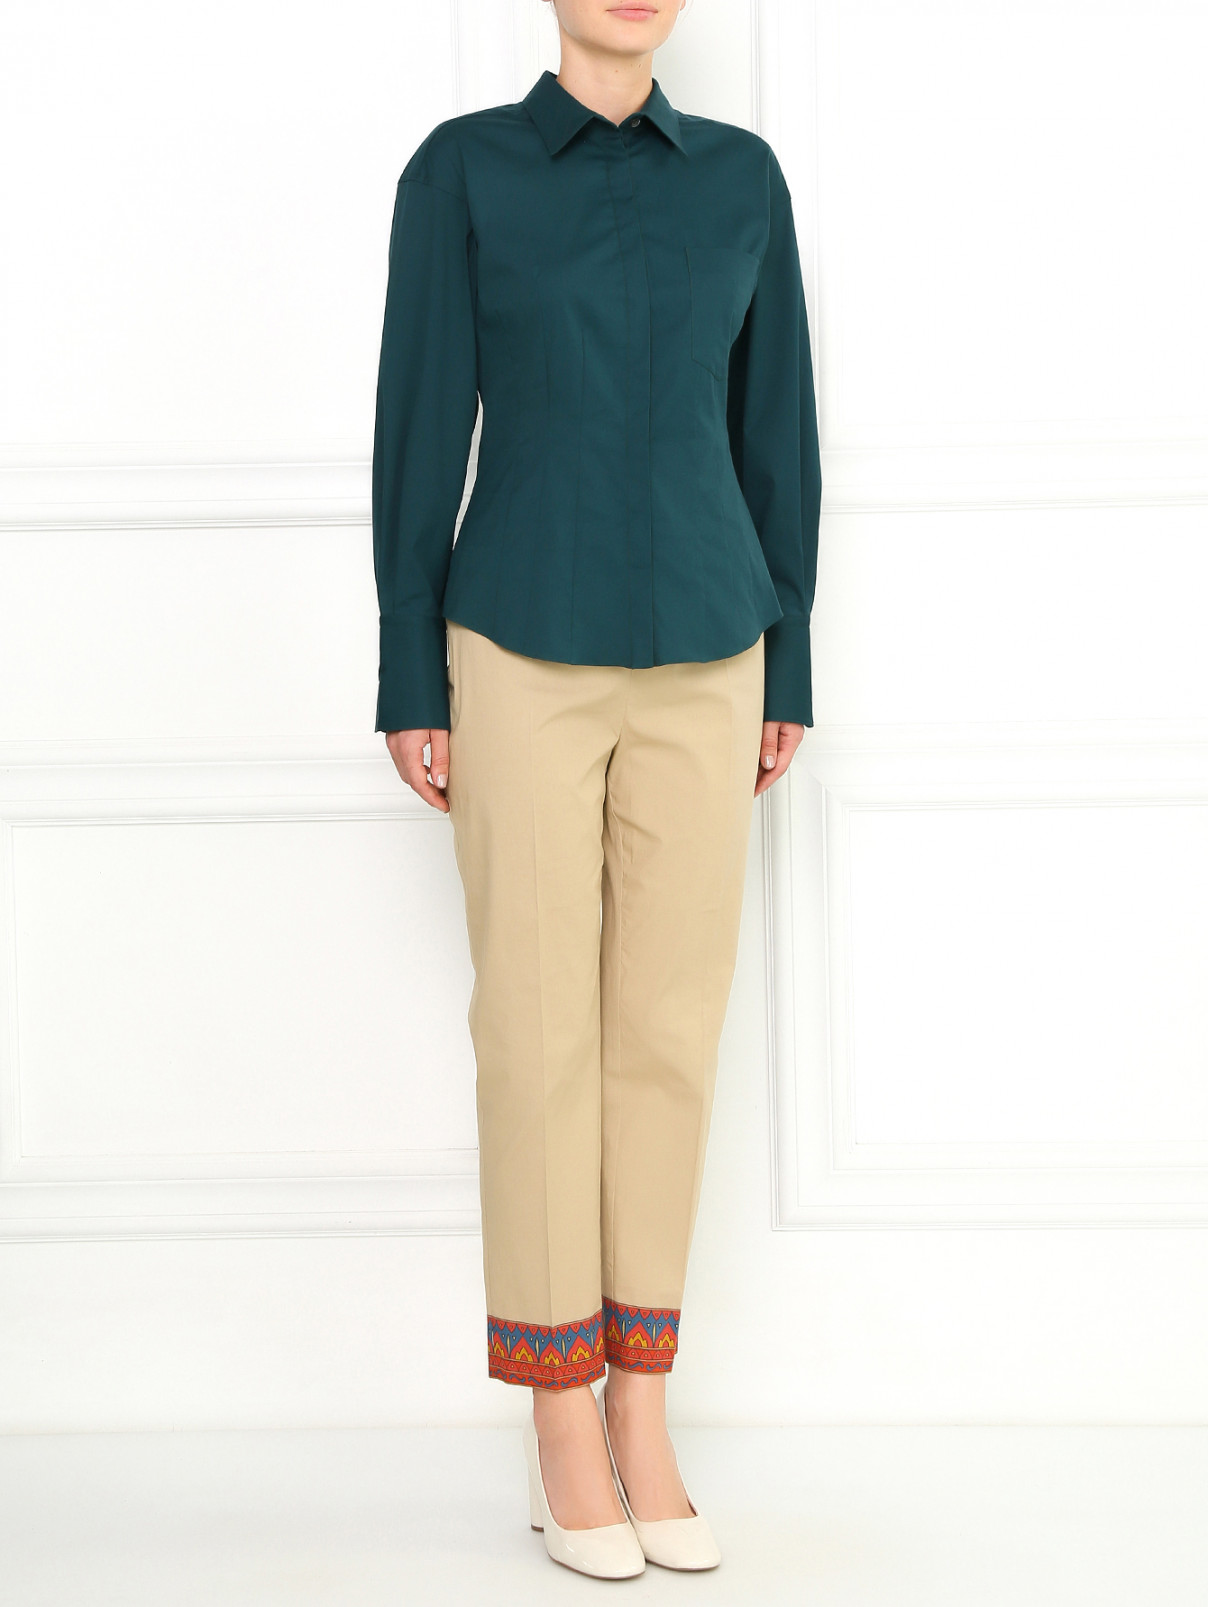 Блуза из хлопка с рельефными швами Aquilano Rimondi  –  Модель Общий вид  – Цвет:  Зеленый